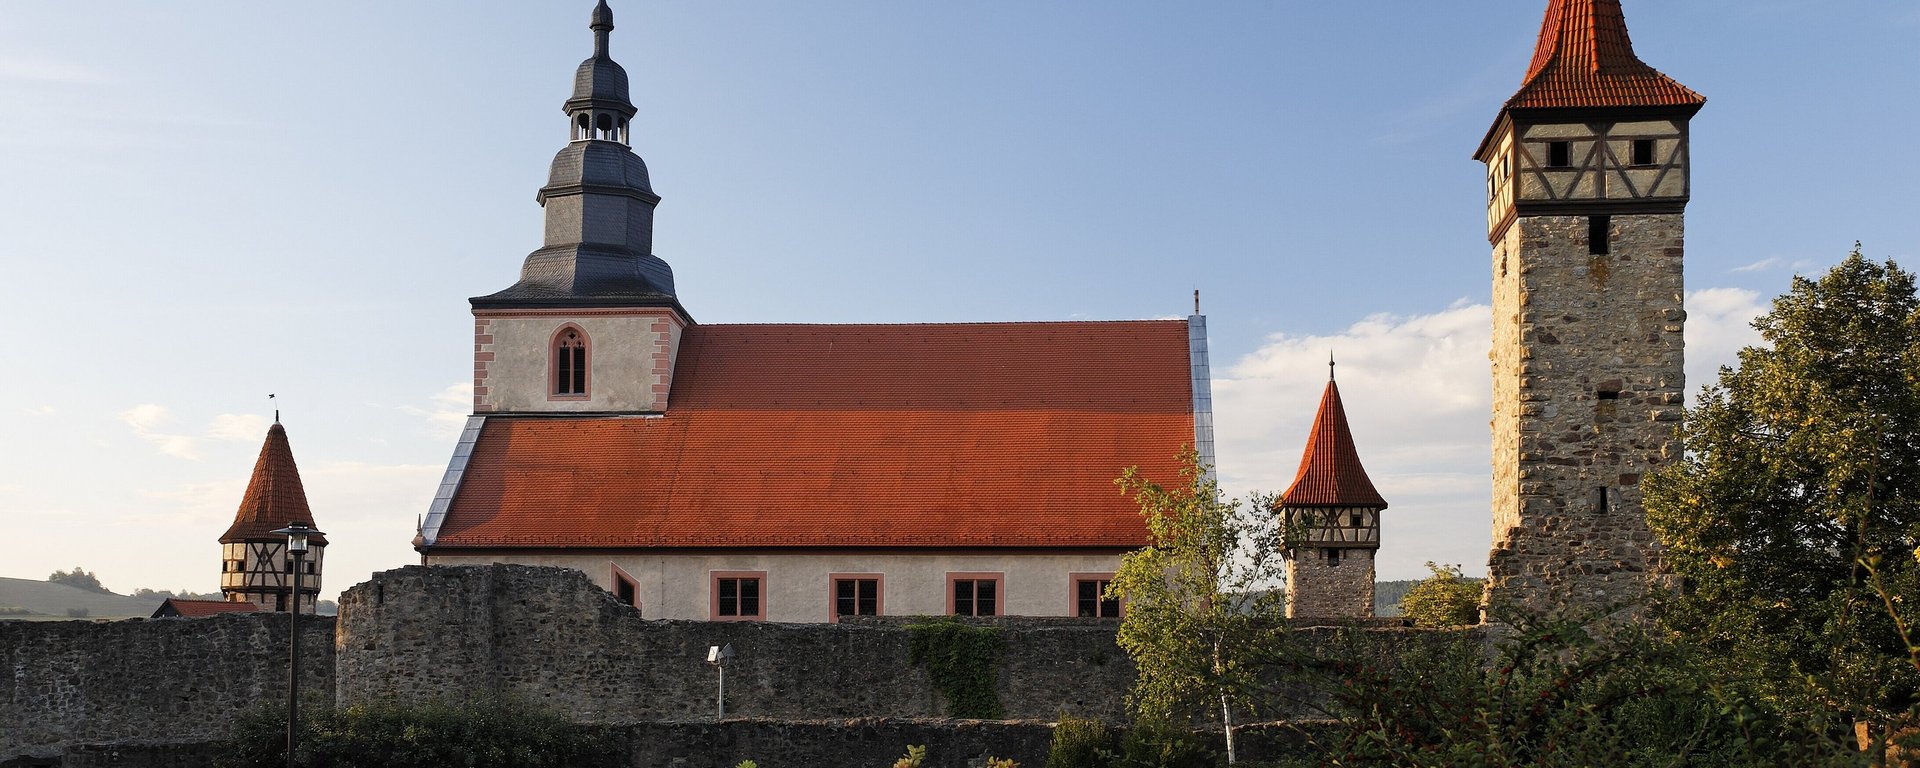 Aktiv und Freizeit in der Rhön - Kirchenburg Ostheim